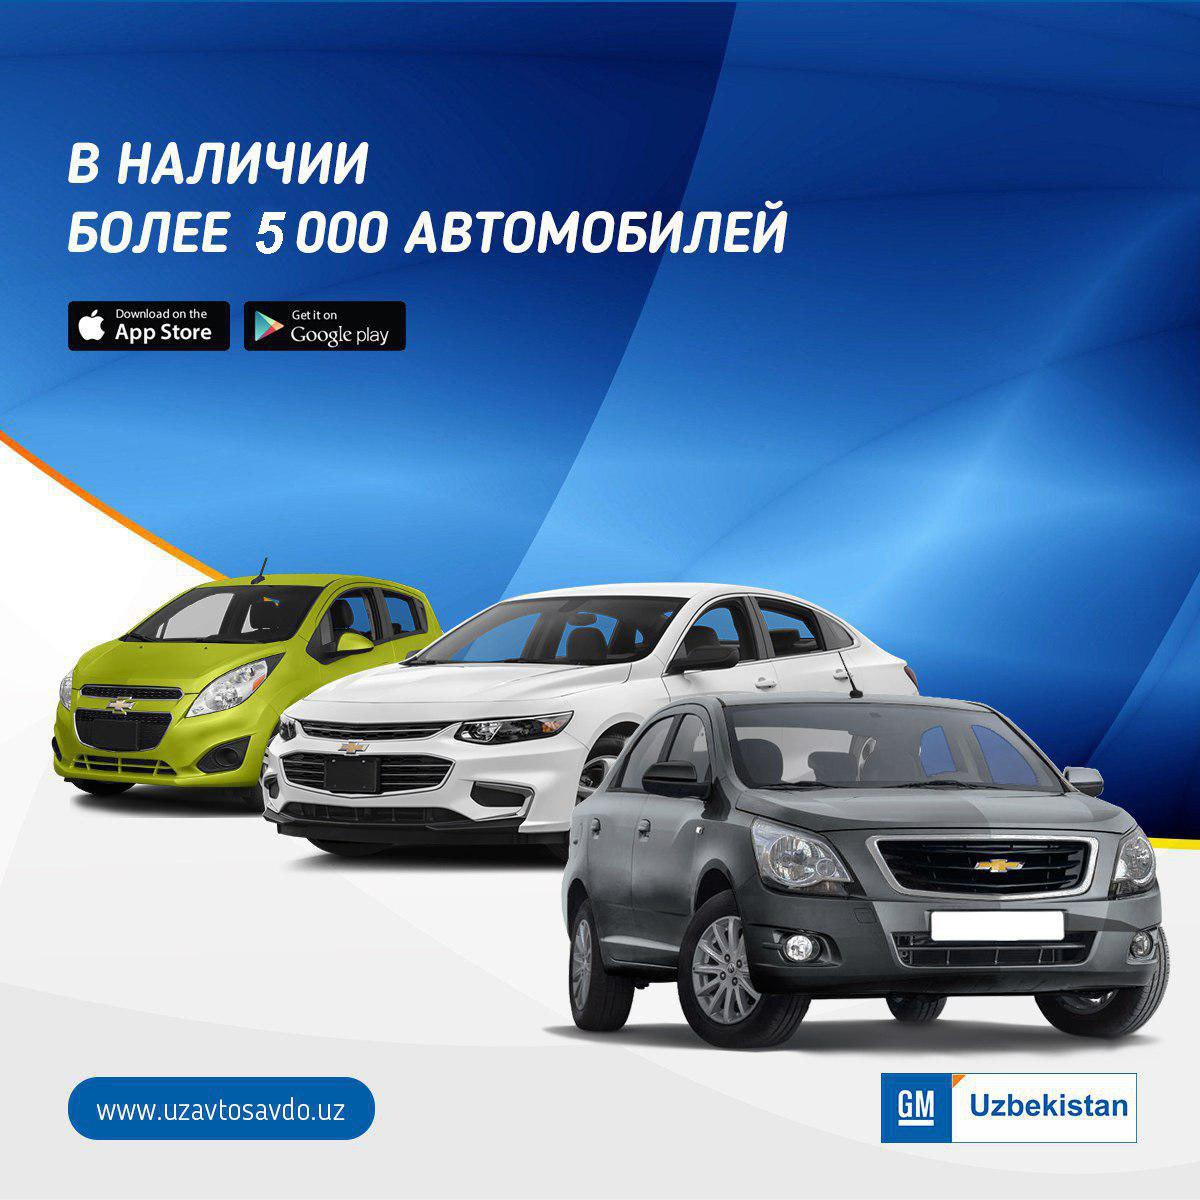 GM Uzbekistan для моментальной покупки предлагает порядка 5 тысяч автомобилей в наличии